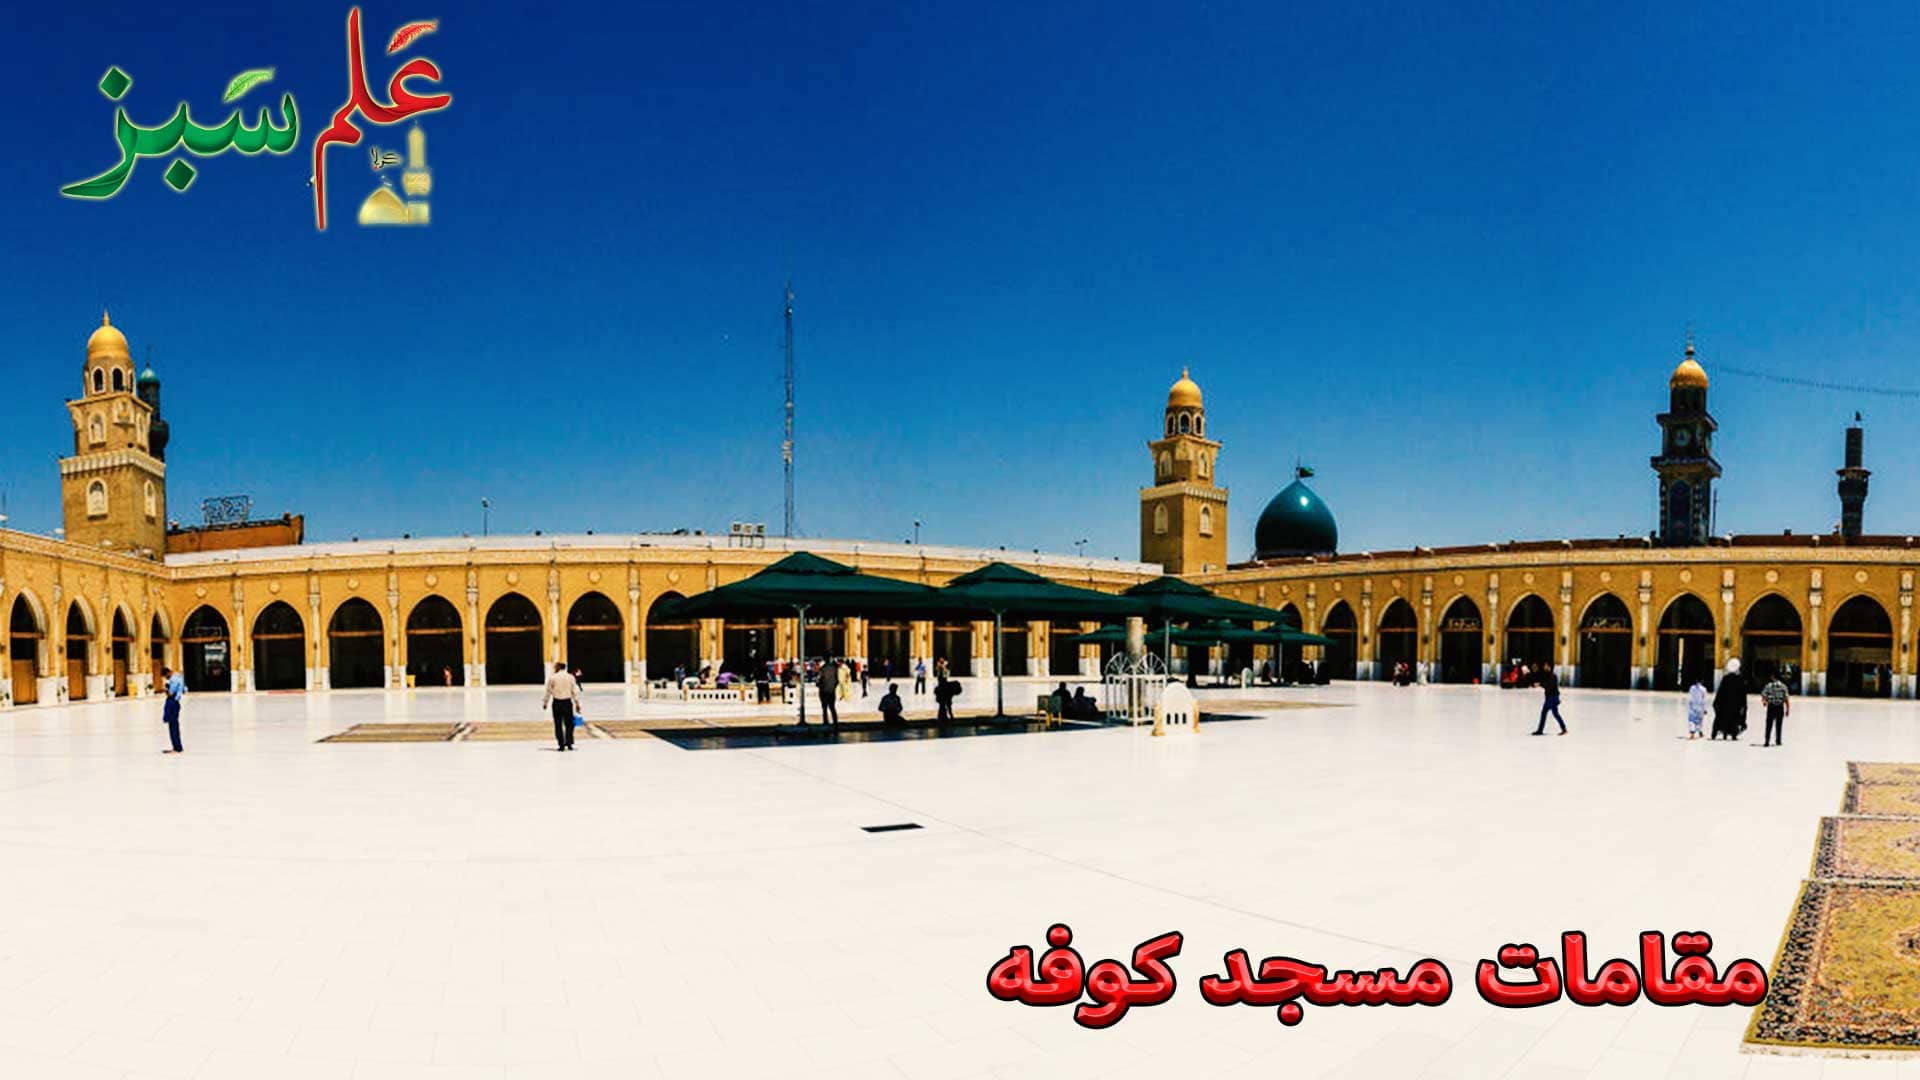 مقامات مسجد کوفه